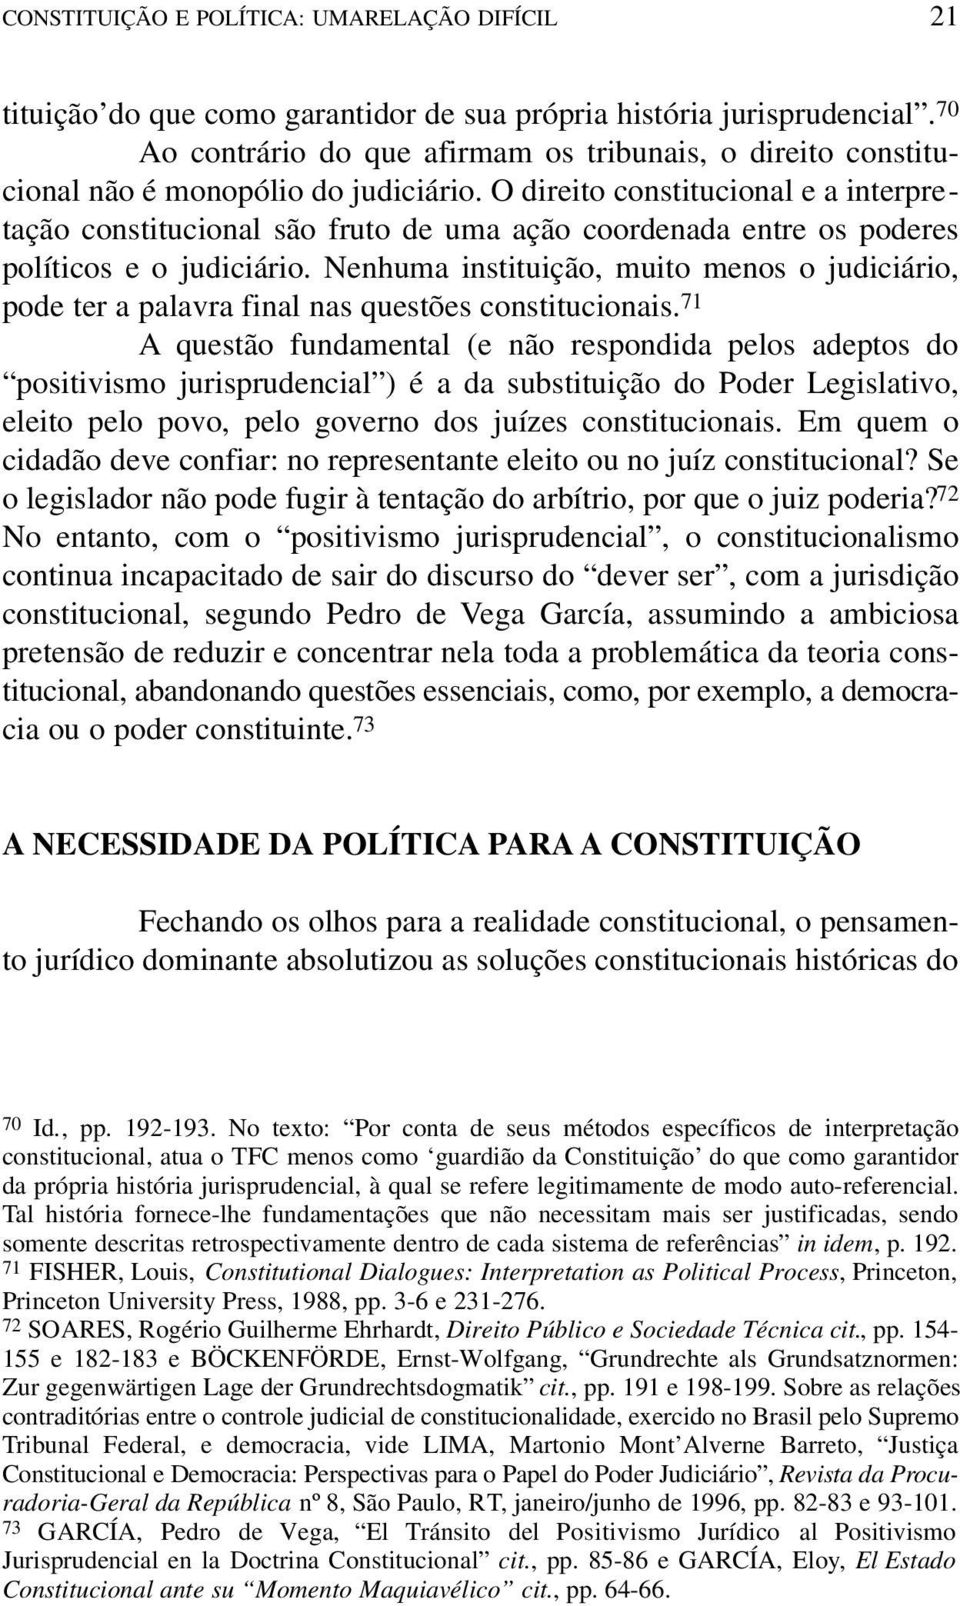 O direito constitucional e a interpretação constitucional são fruto de uma ação coordenada entre os poderes políticos e o judiciário.